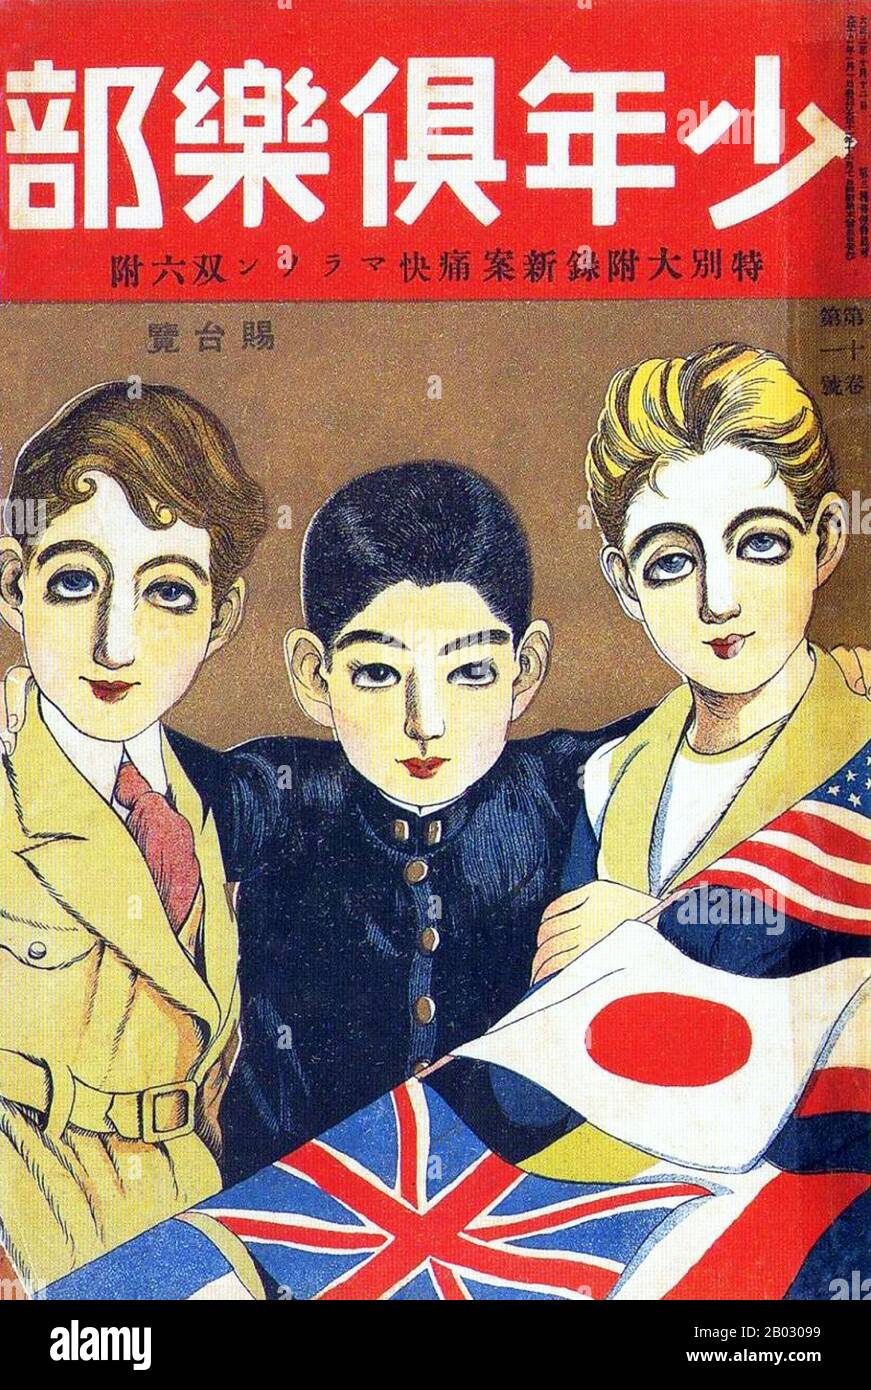 Au Japon, entre 1920 et 1945, l'affiche reflète la militarisation rapide de la société et la croissance du militarisme, du statisme et du fascisme à L'Époque de Showa. Dans les années 1920, l'exposition affiche l'art présente des éléments de l'art moderne et même de l'art déco. Les thèmes sont fantaisistes et tournés vers l'extérieur, représentant l'importance et l'influence croissantes du Japon dans le monde du commerce et de l'art international D'Ici les années 1930, ce genre d'affiche a connu une croissance beaucoup plus sombre, moins préoccupée par les thèmes humains et plus dirigée vers le statisme et le contrôle social. Les images féminines disparaissent pour être remplacées par des roues Banque D'Images